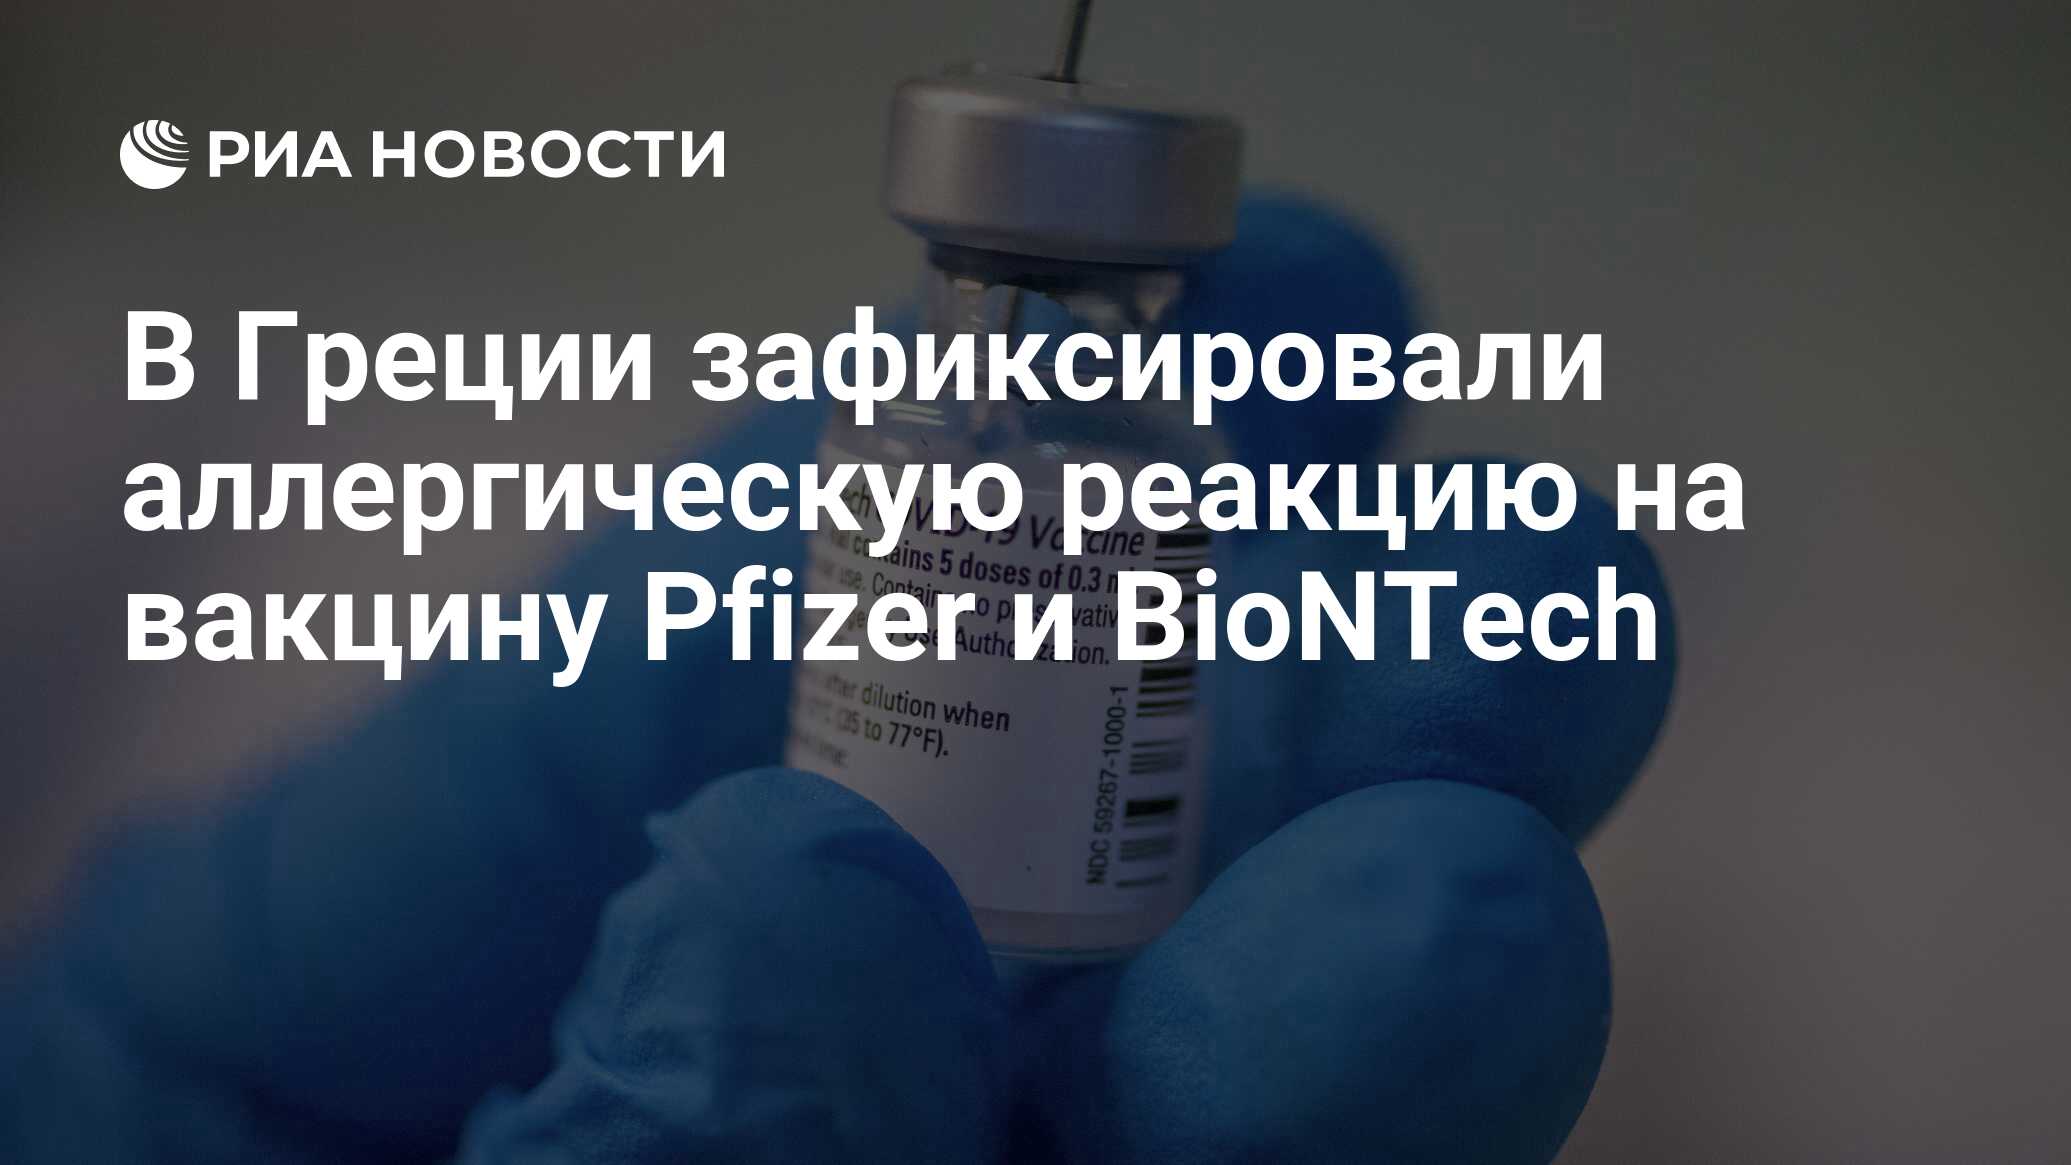 В Греции зафиксировали аллергическую реакцию на вакцину Pfizer и BioNTech